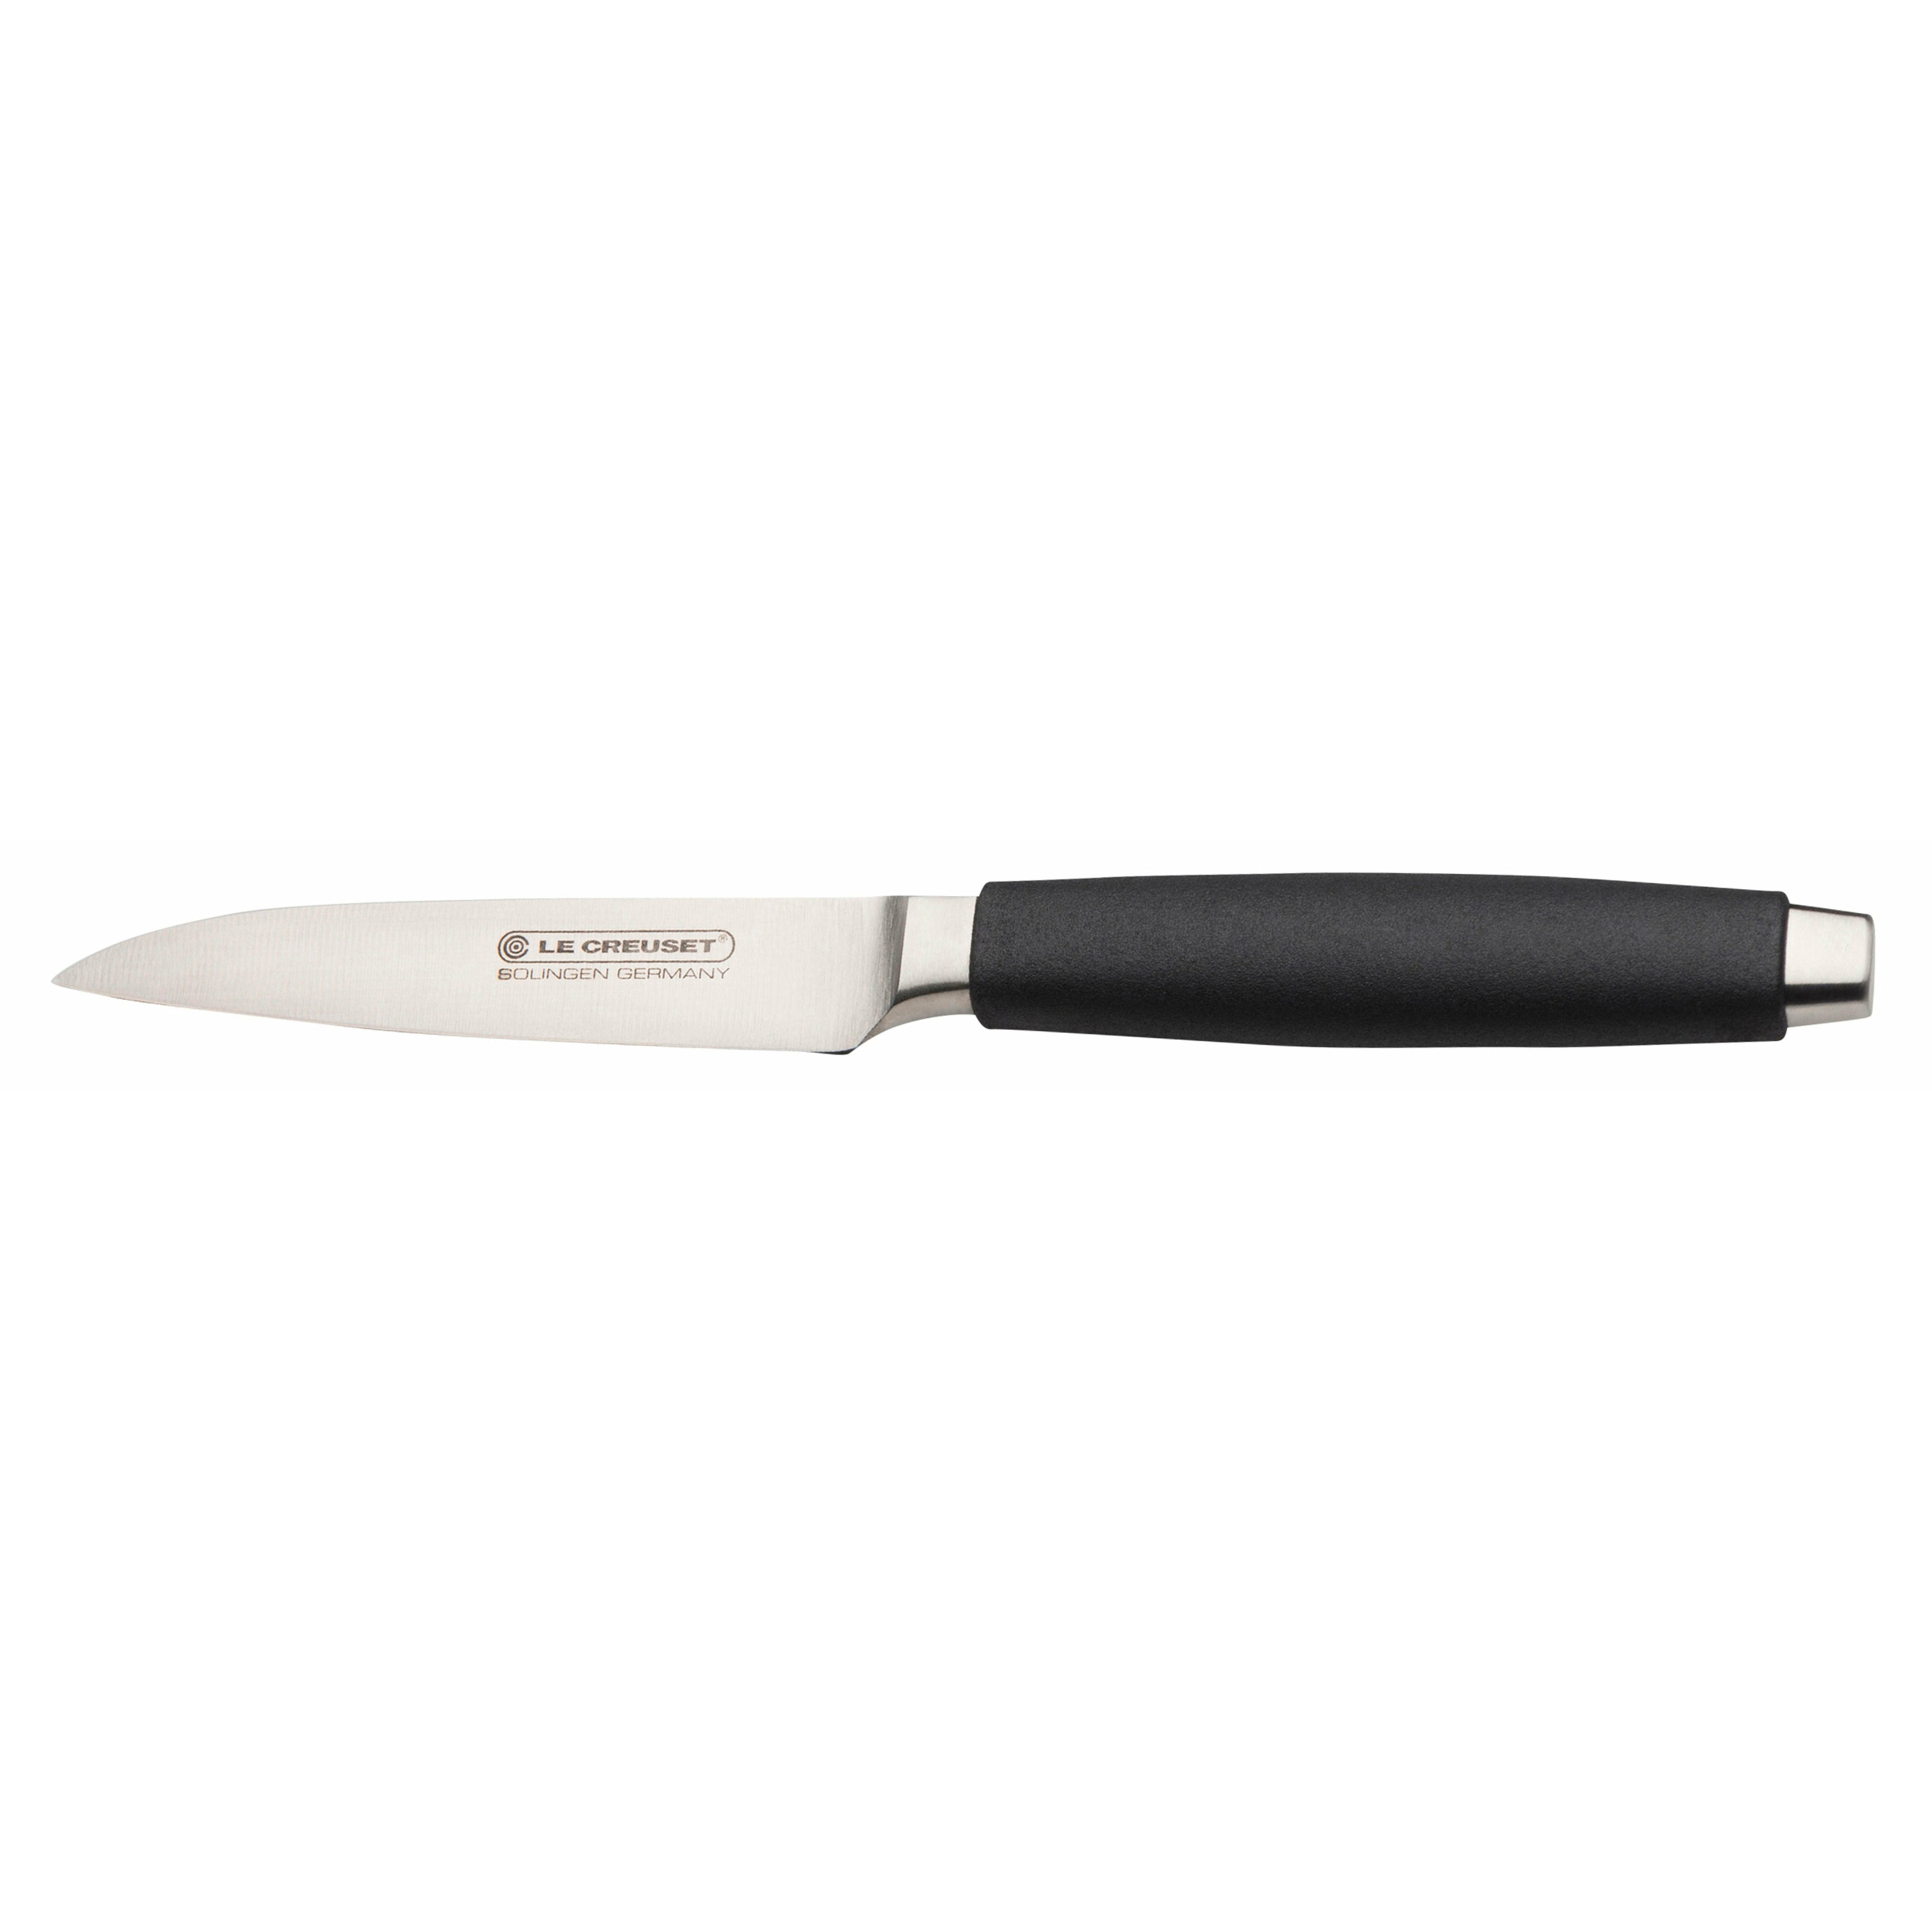 Le creuset paring knivstandard med svart håndtak, 9 cm